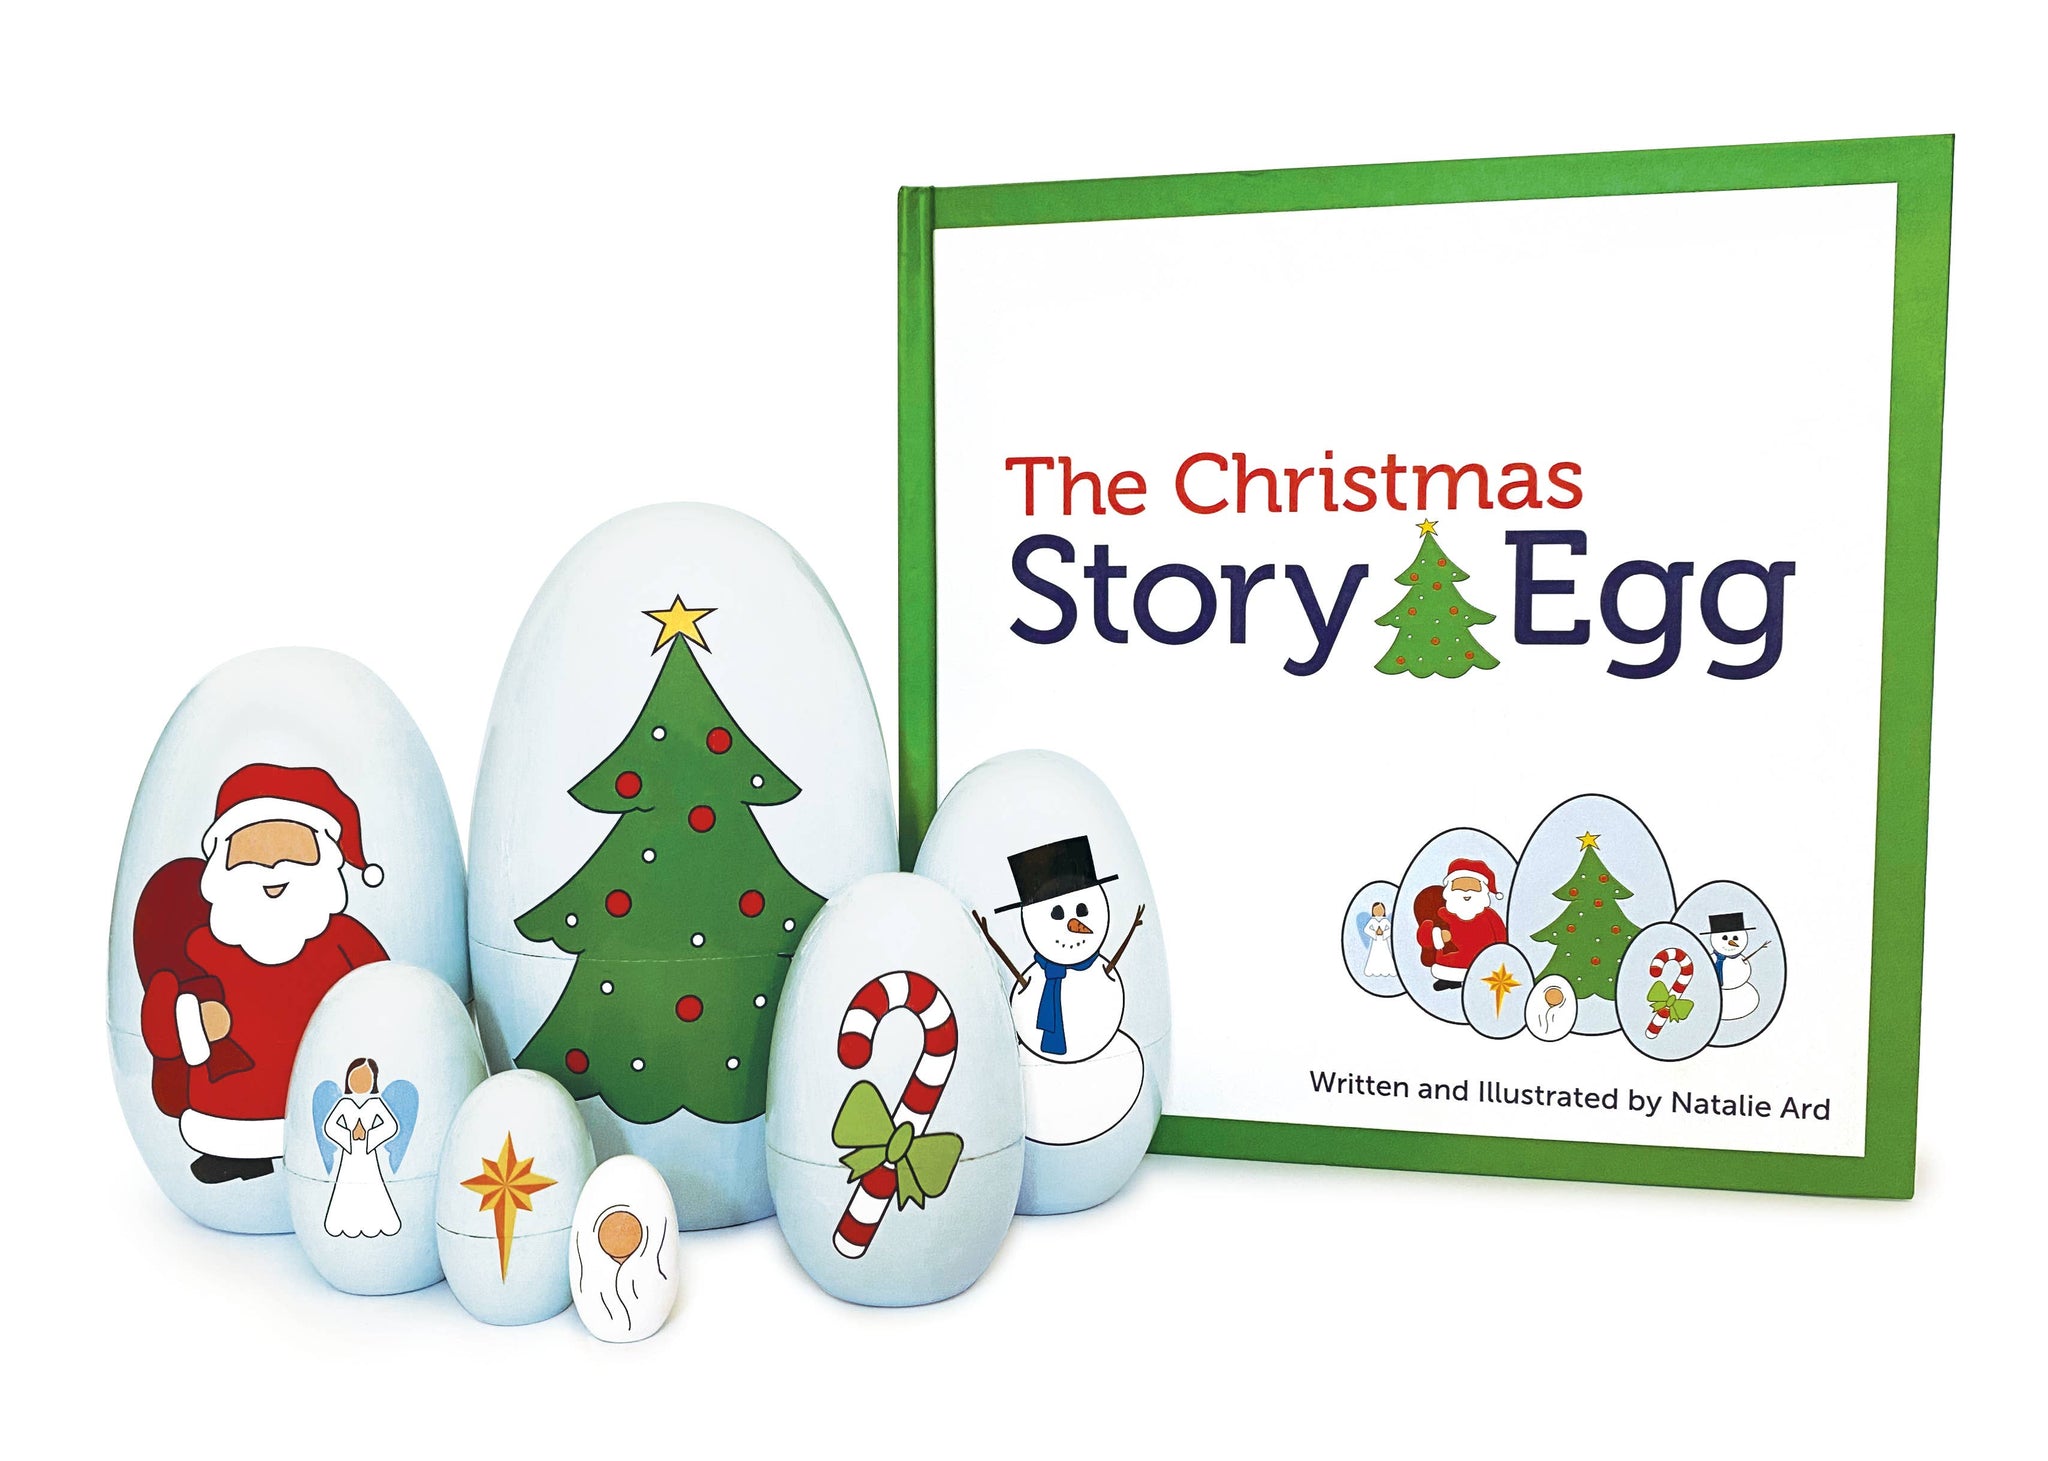 *The Christmas Story Egg